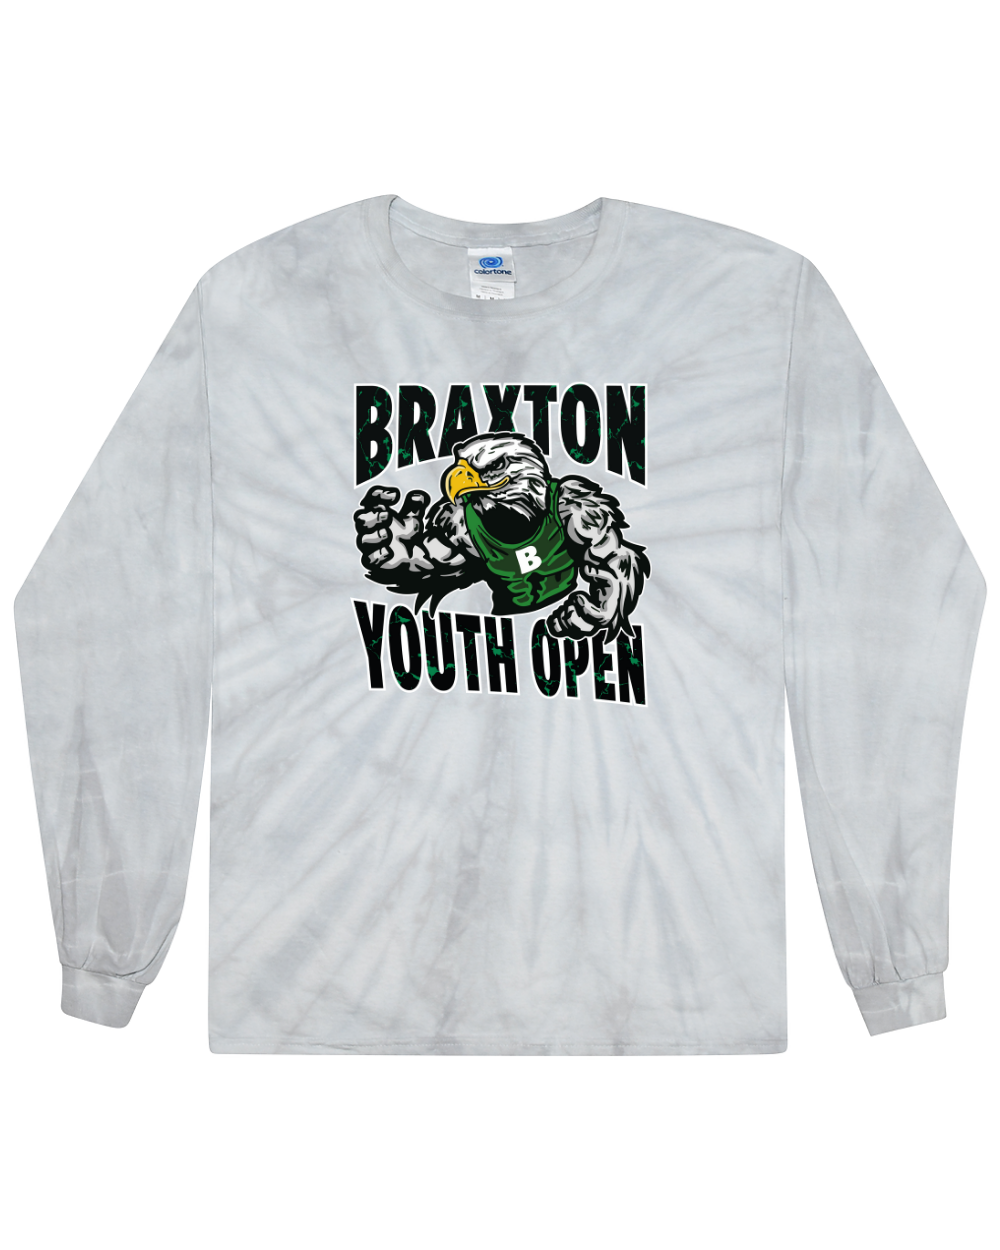 Braxton Youth Open  Tie Dye Long Sleeve